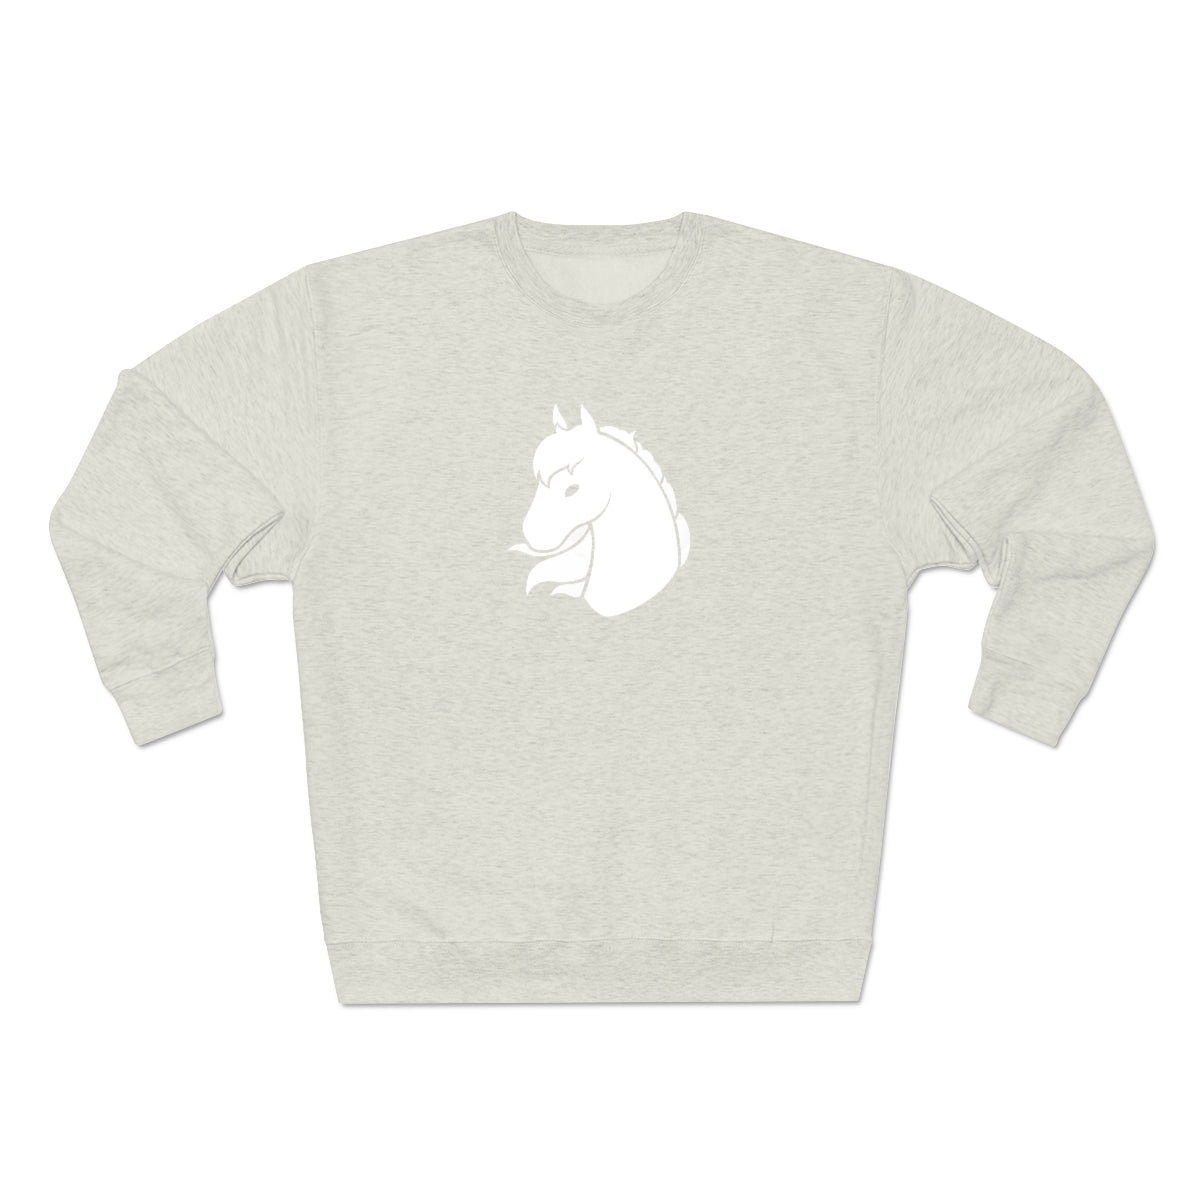 Crew Neck Sweatshirt - White Horse Head (Unisex)